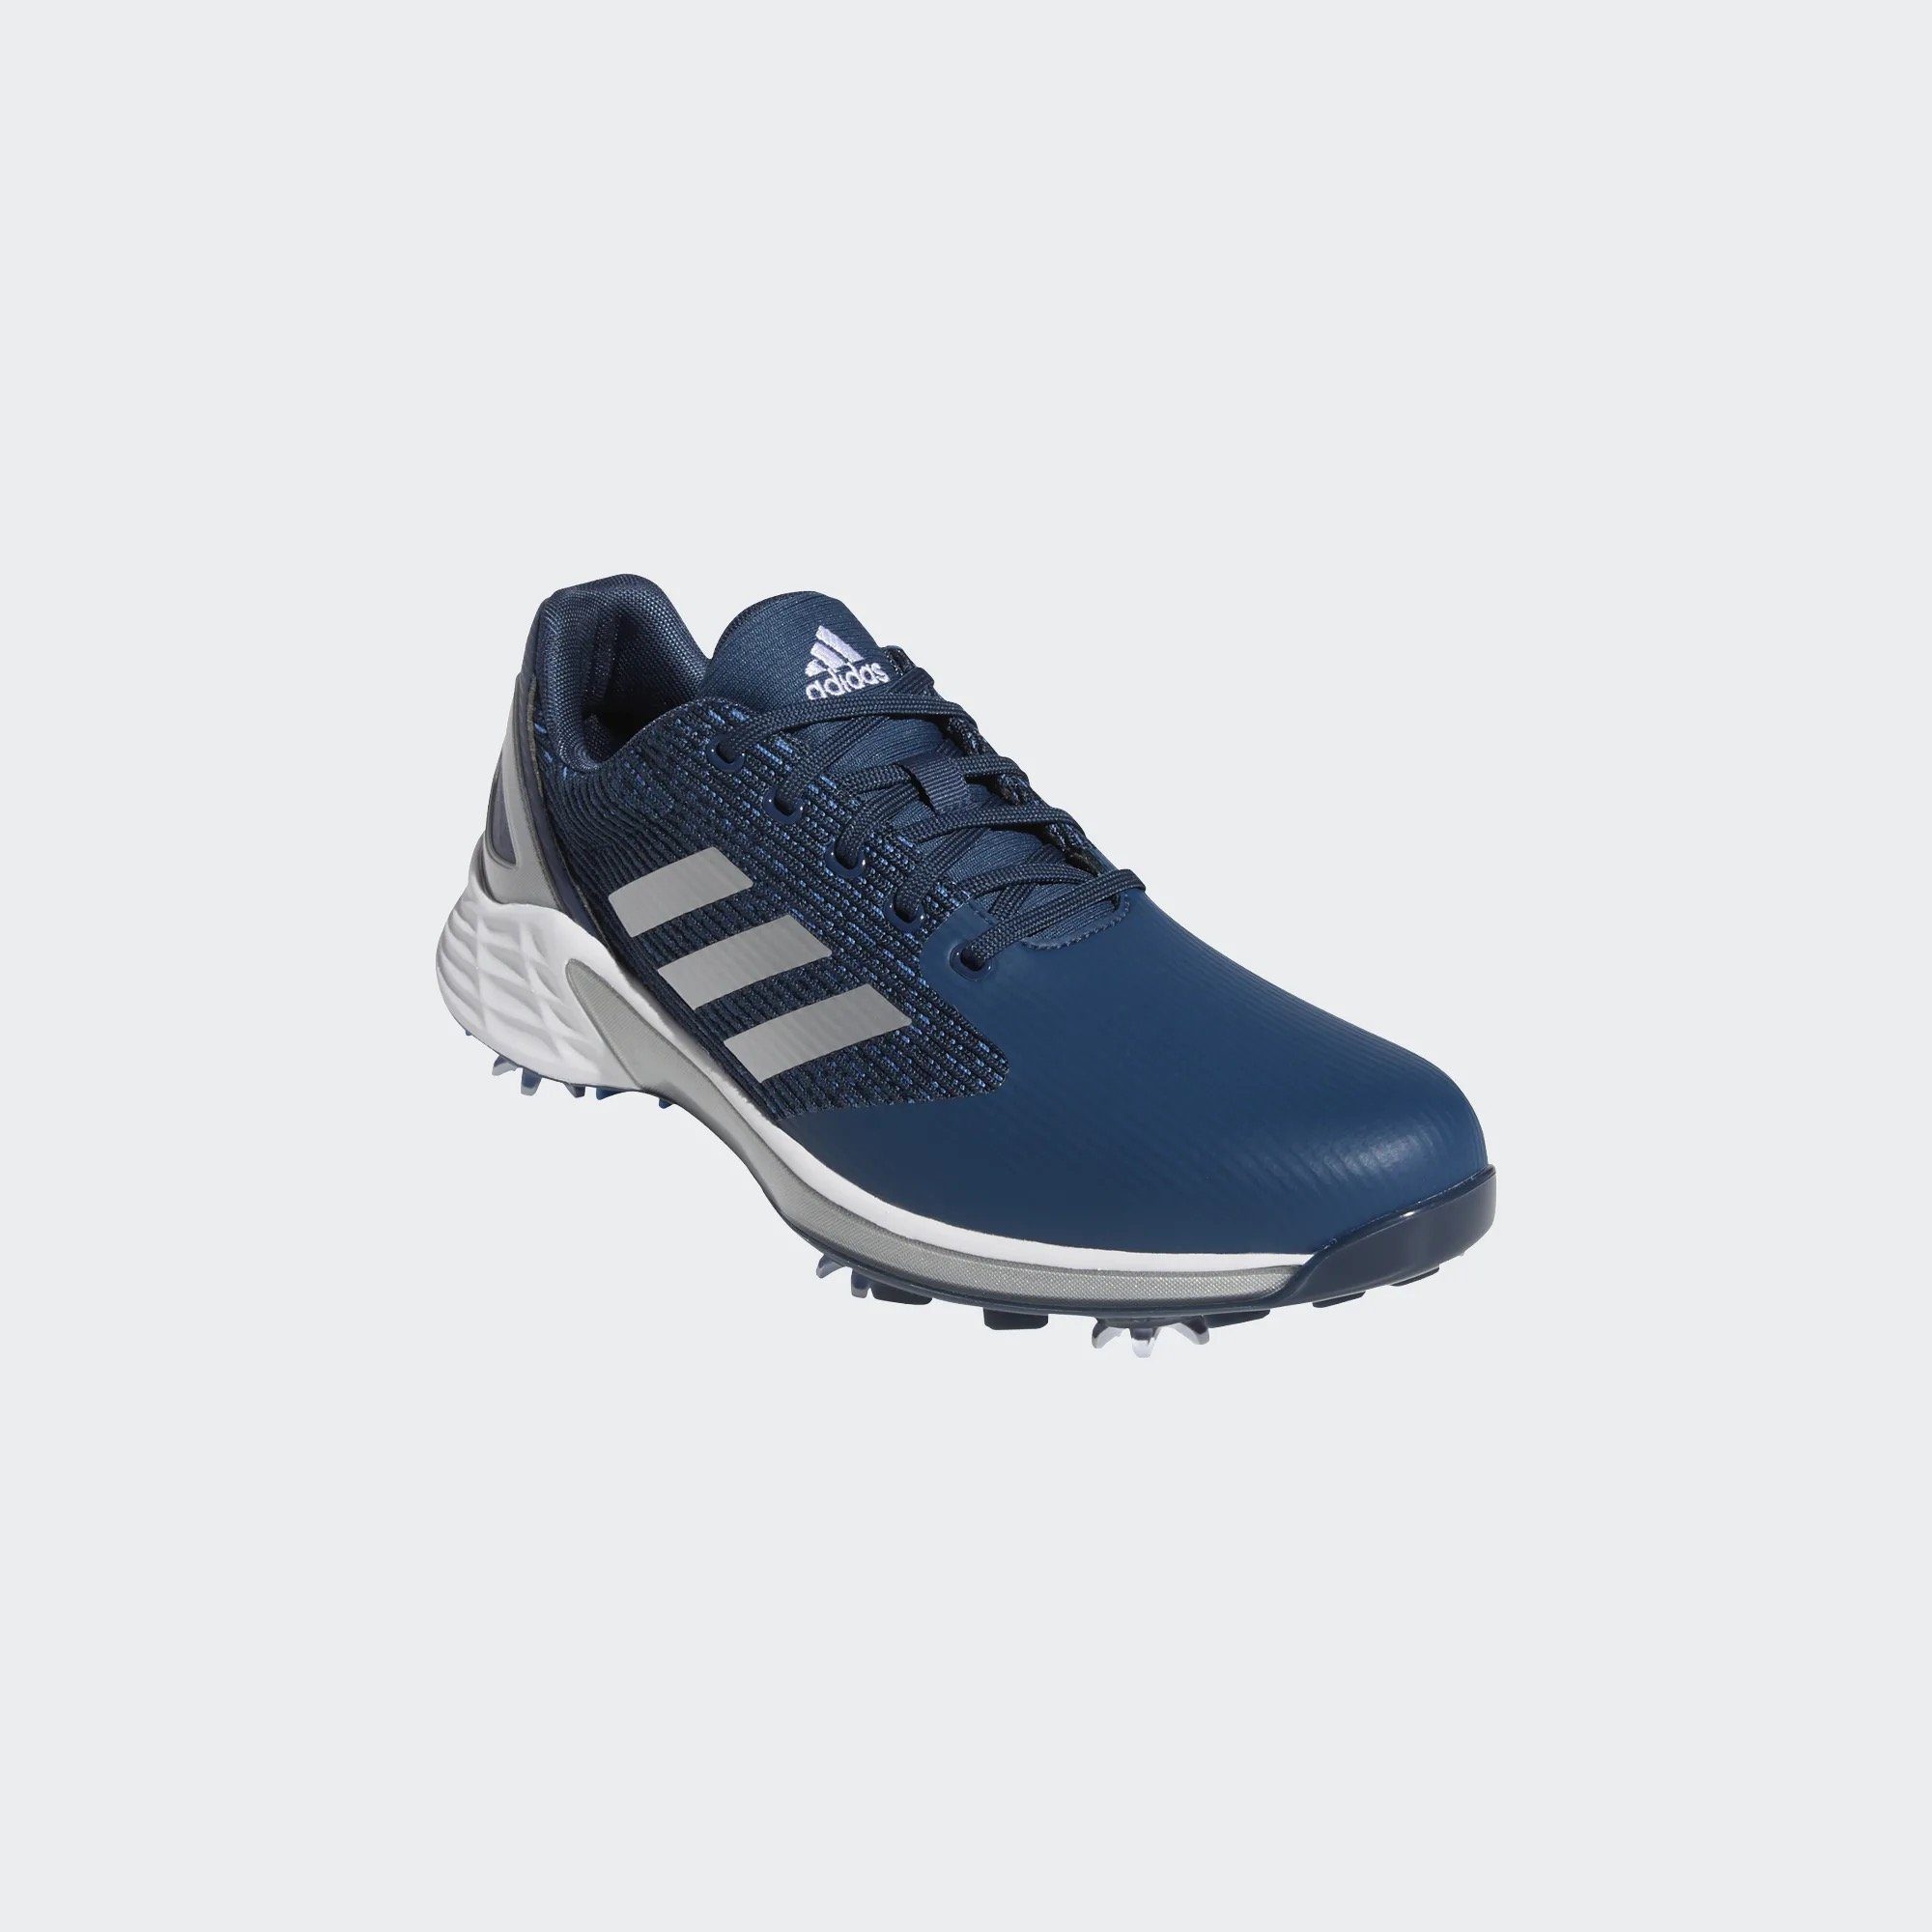 Sportswear Grey/Blue/Yellow adidas ZG Motion Golfschuh Adidas Boost Zwischensohle 21 Herren